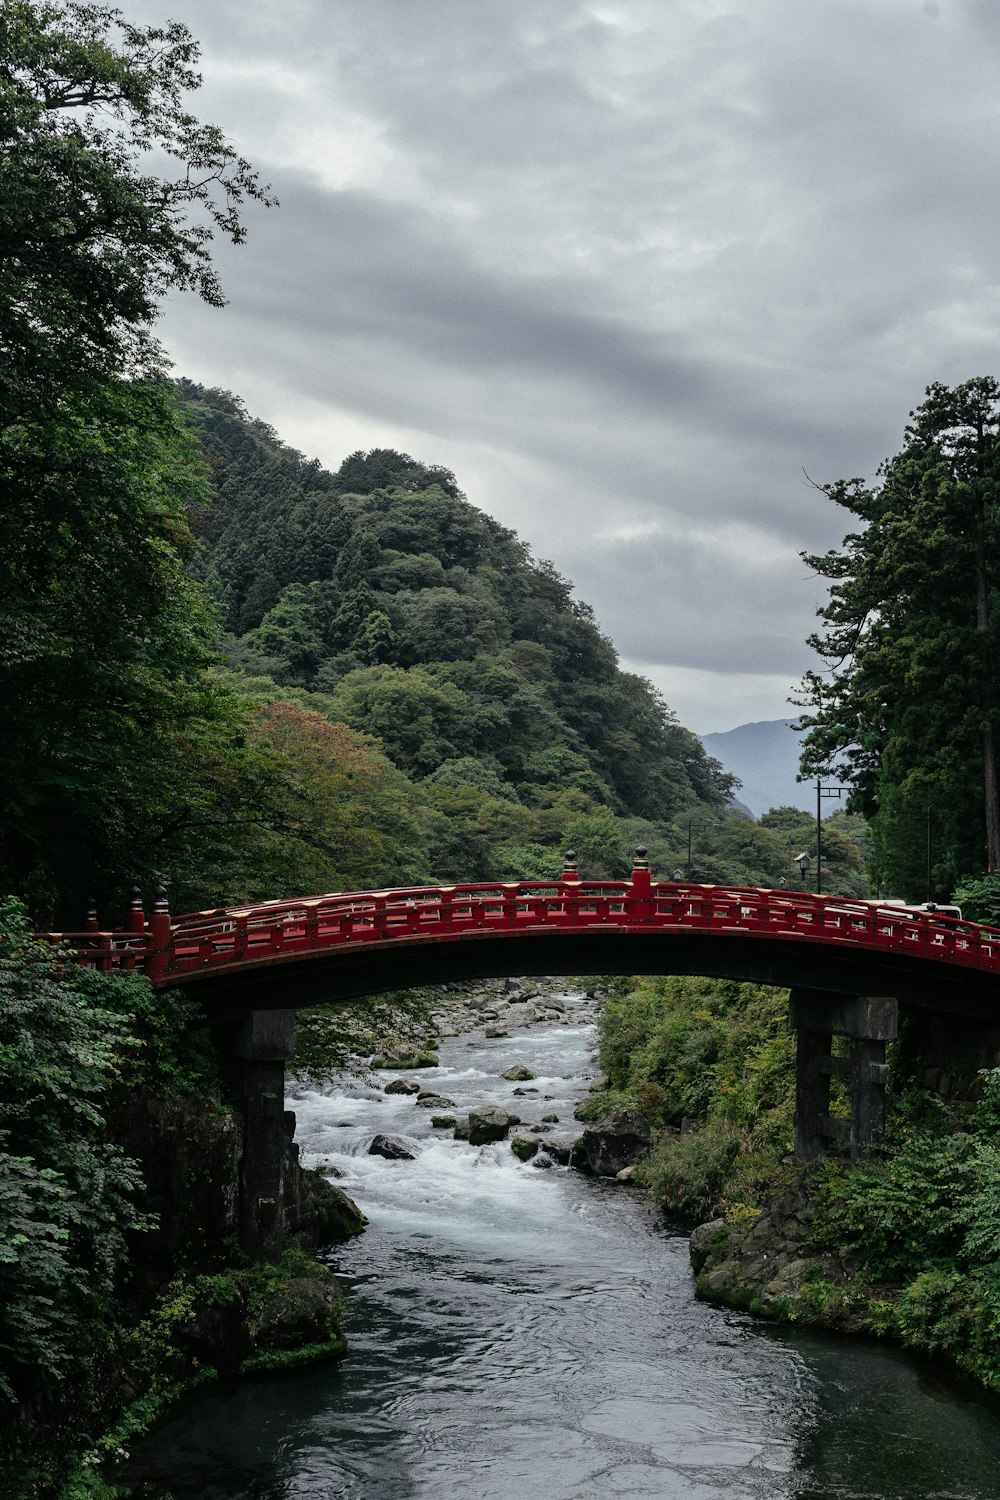 流れる小川に架かる黒と赤の橋の近くの緑の木